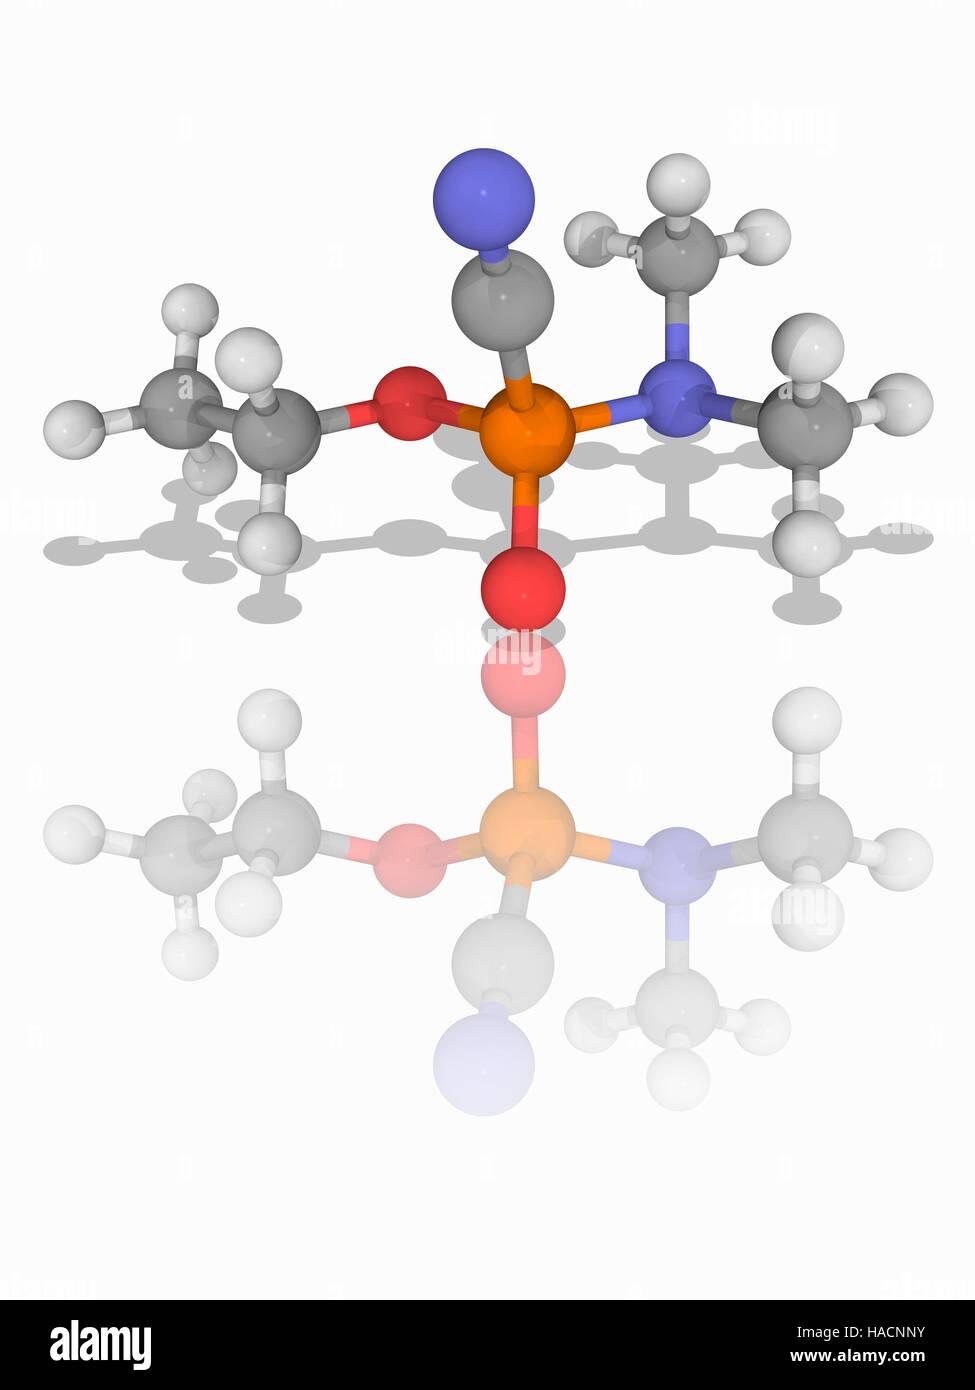 Le tabun. Le modèle moléculaire de l'agent neurotoxique extrêmement toxiques tabun (C5.H11.N2.O2.P). Chimiquement, c'est un ester éthylique. C'était la première (GA) de la série G de contre les agents chimiques. Les atomes sont représentés comme des sphères et sont codés par couleur : carbone (gris), l'hydrogène (blanc), l'azote (bleu), l'oxygène (rouge) et de phosphore (orange). L'illustration. Banque D'Images